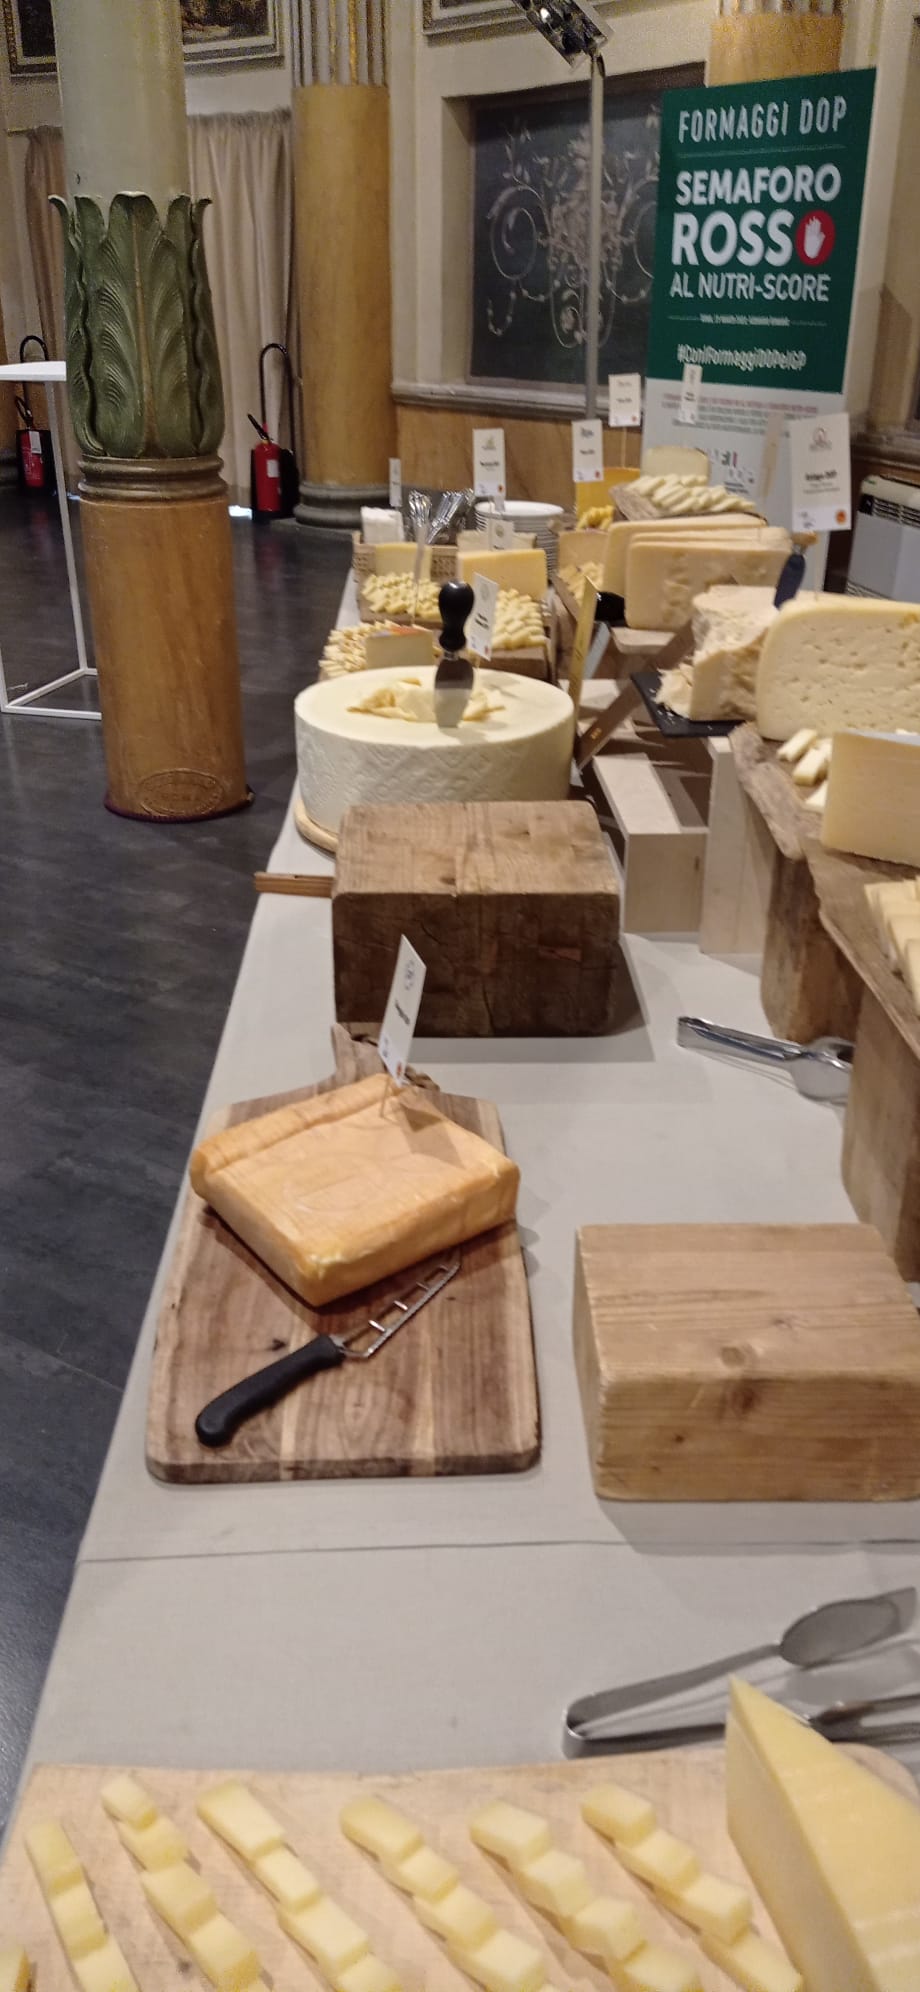 Foto 6 - “formaggi dop: semaforo rosso al nutriscore”, promosso da afidop-associazione dei formaggi italiani dop e igp